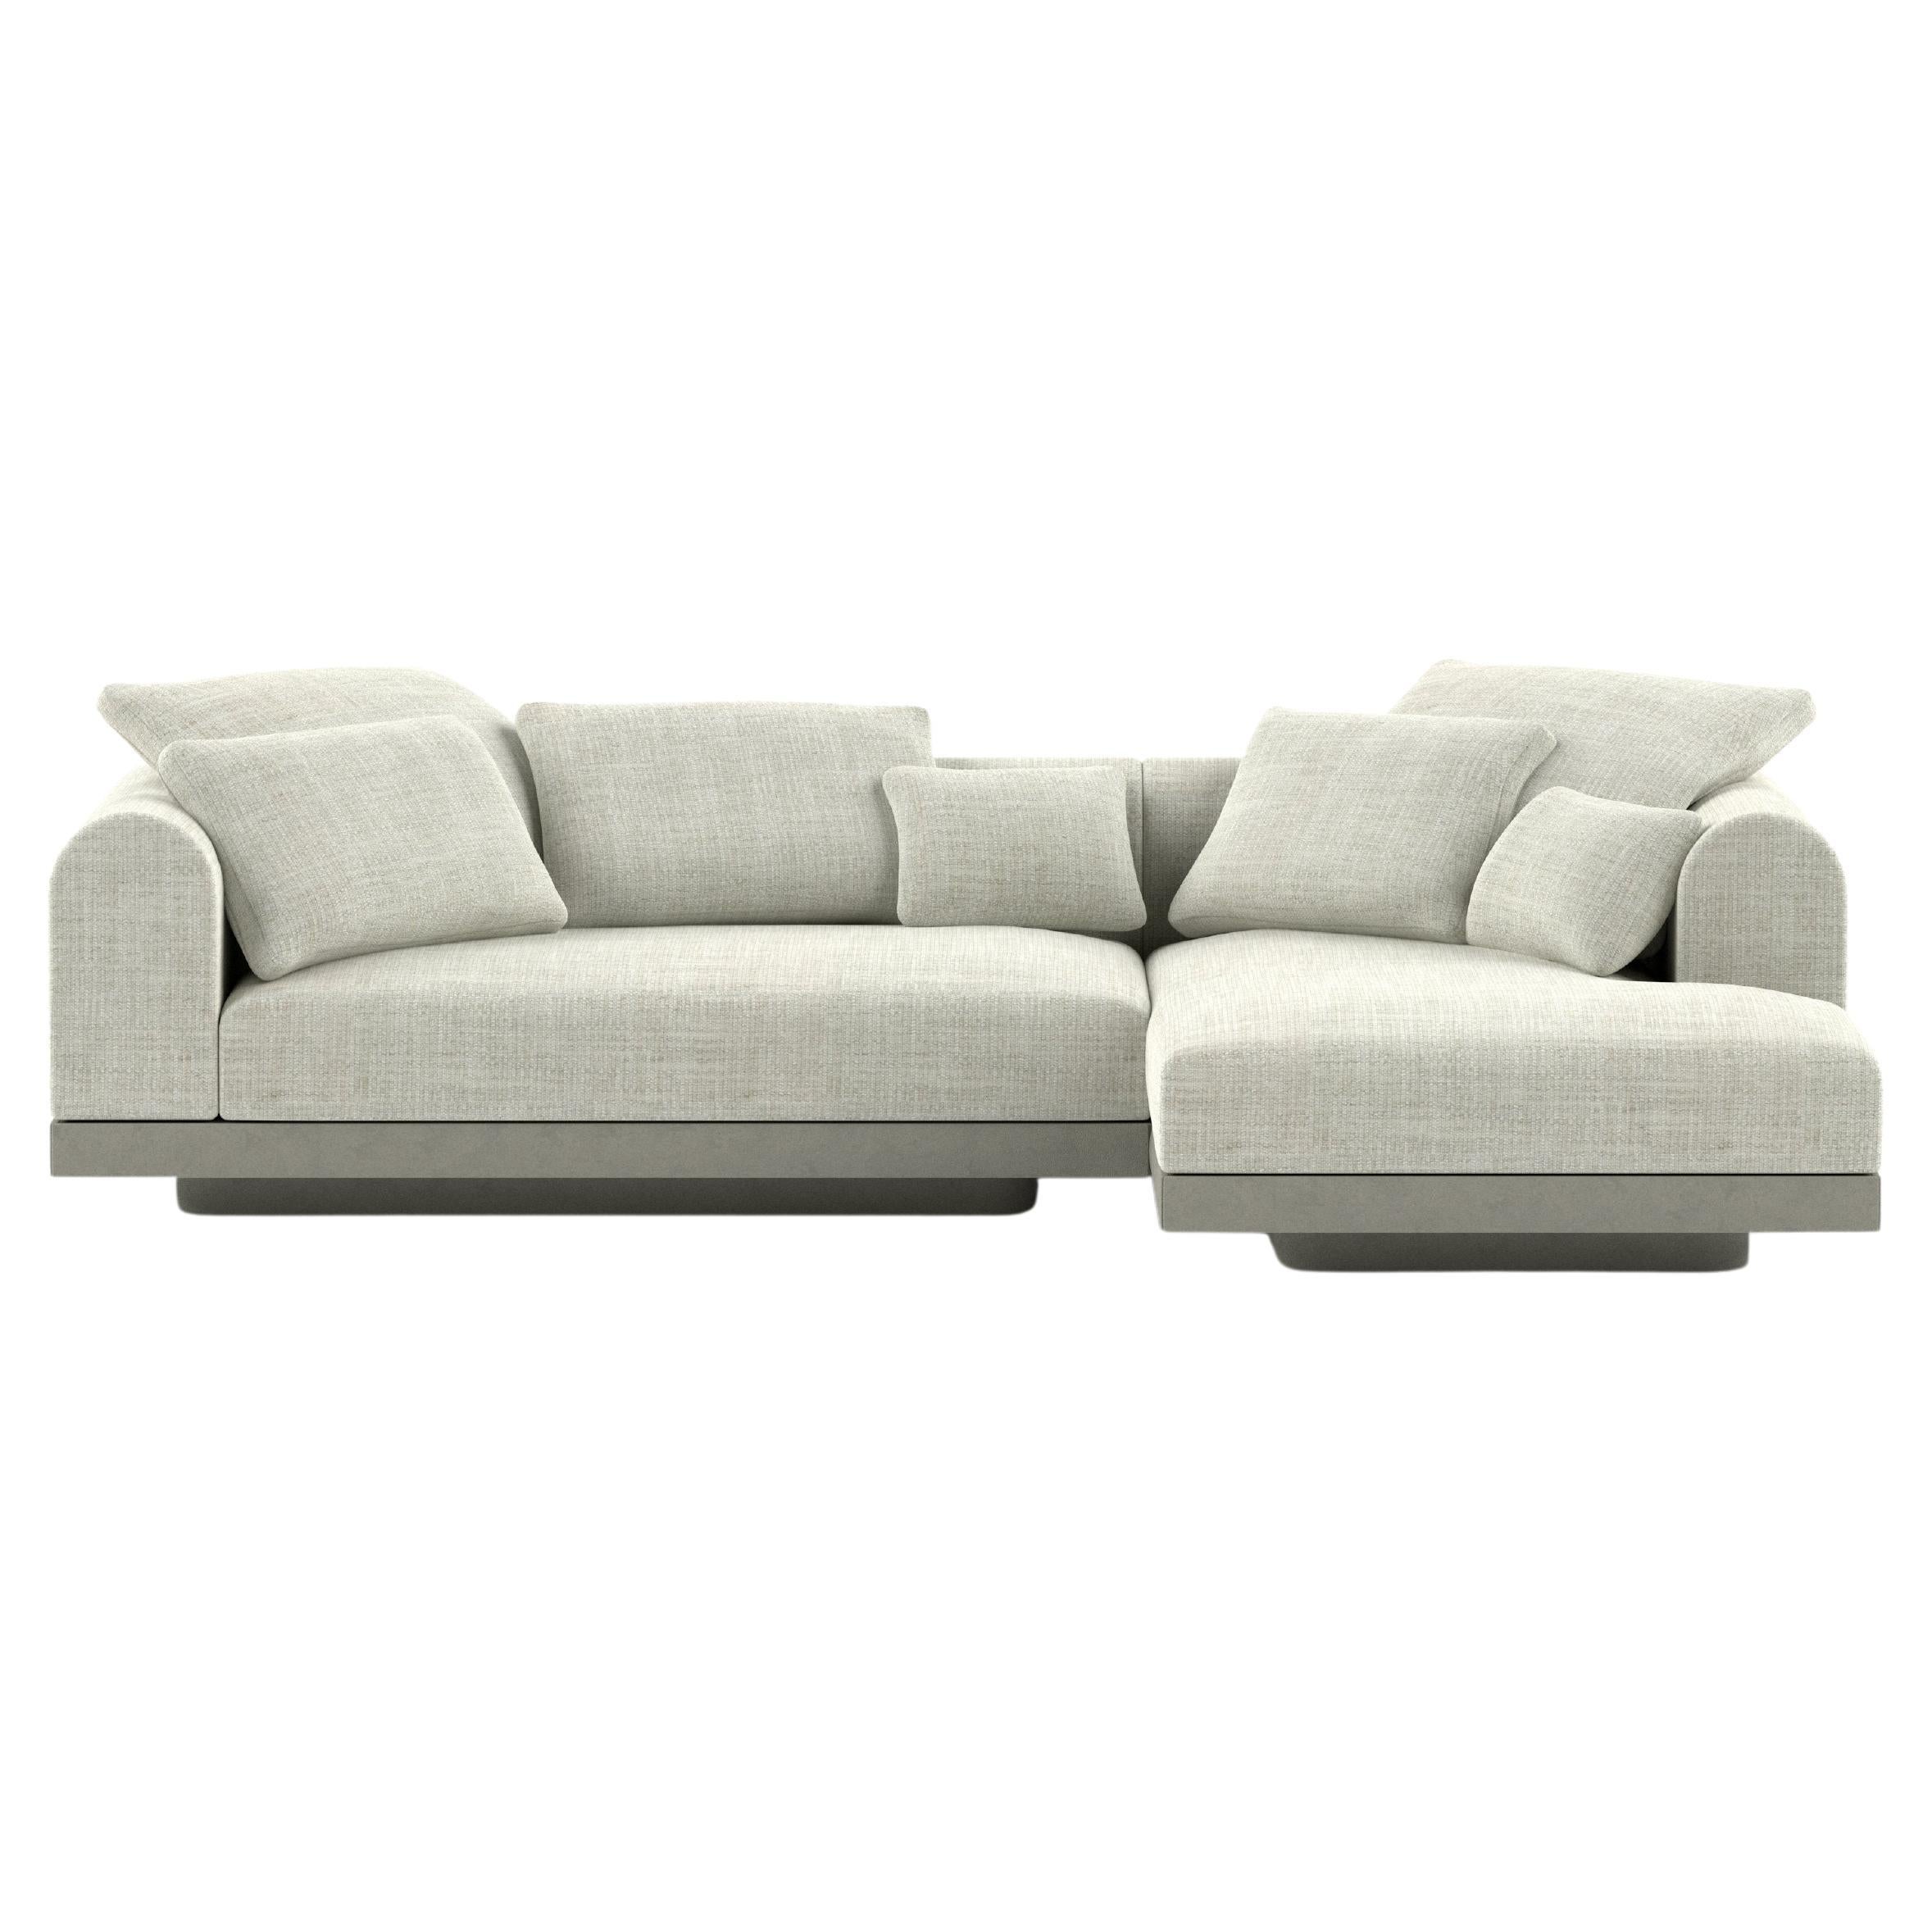 'Aqueduct' Contemporary Sofa by Poiat, Setup 1, Fox 02, High Plinth For Sale